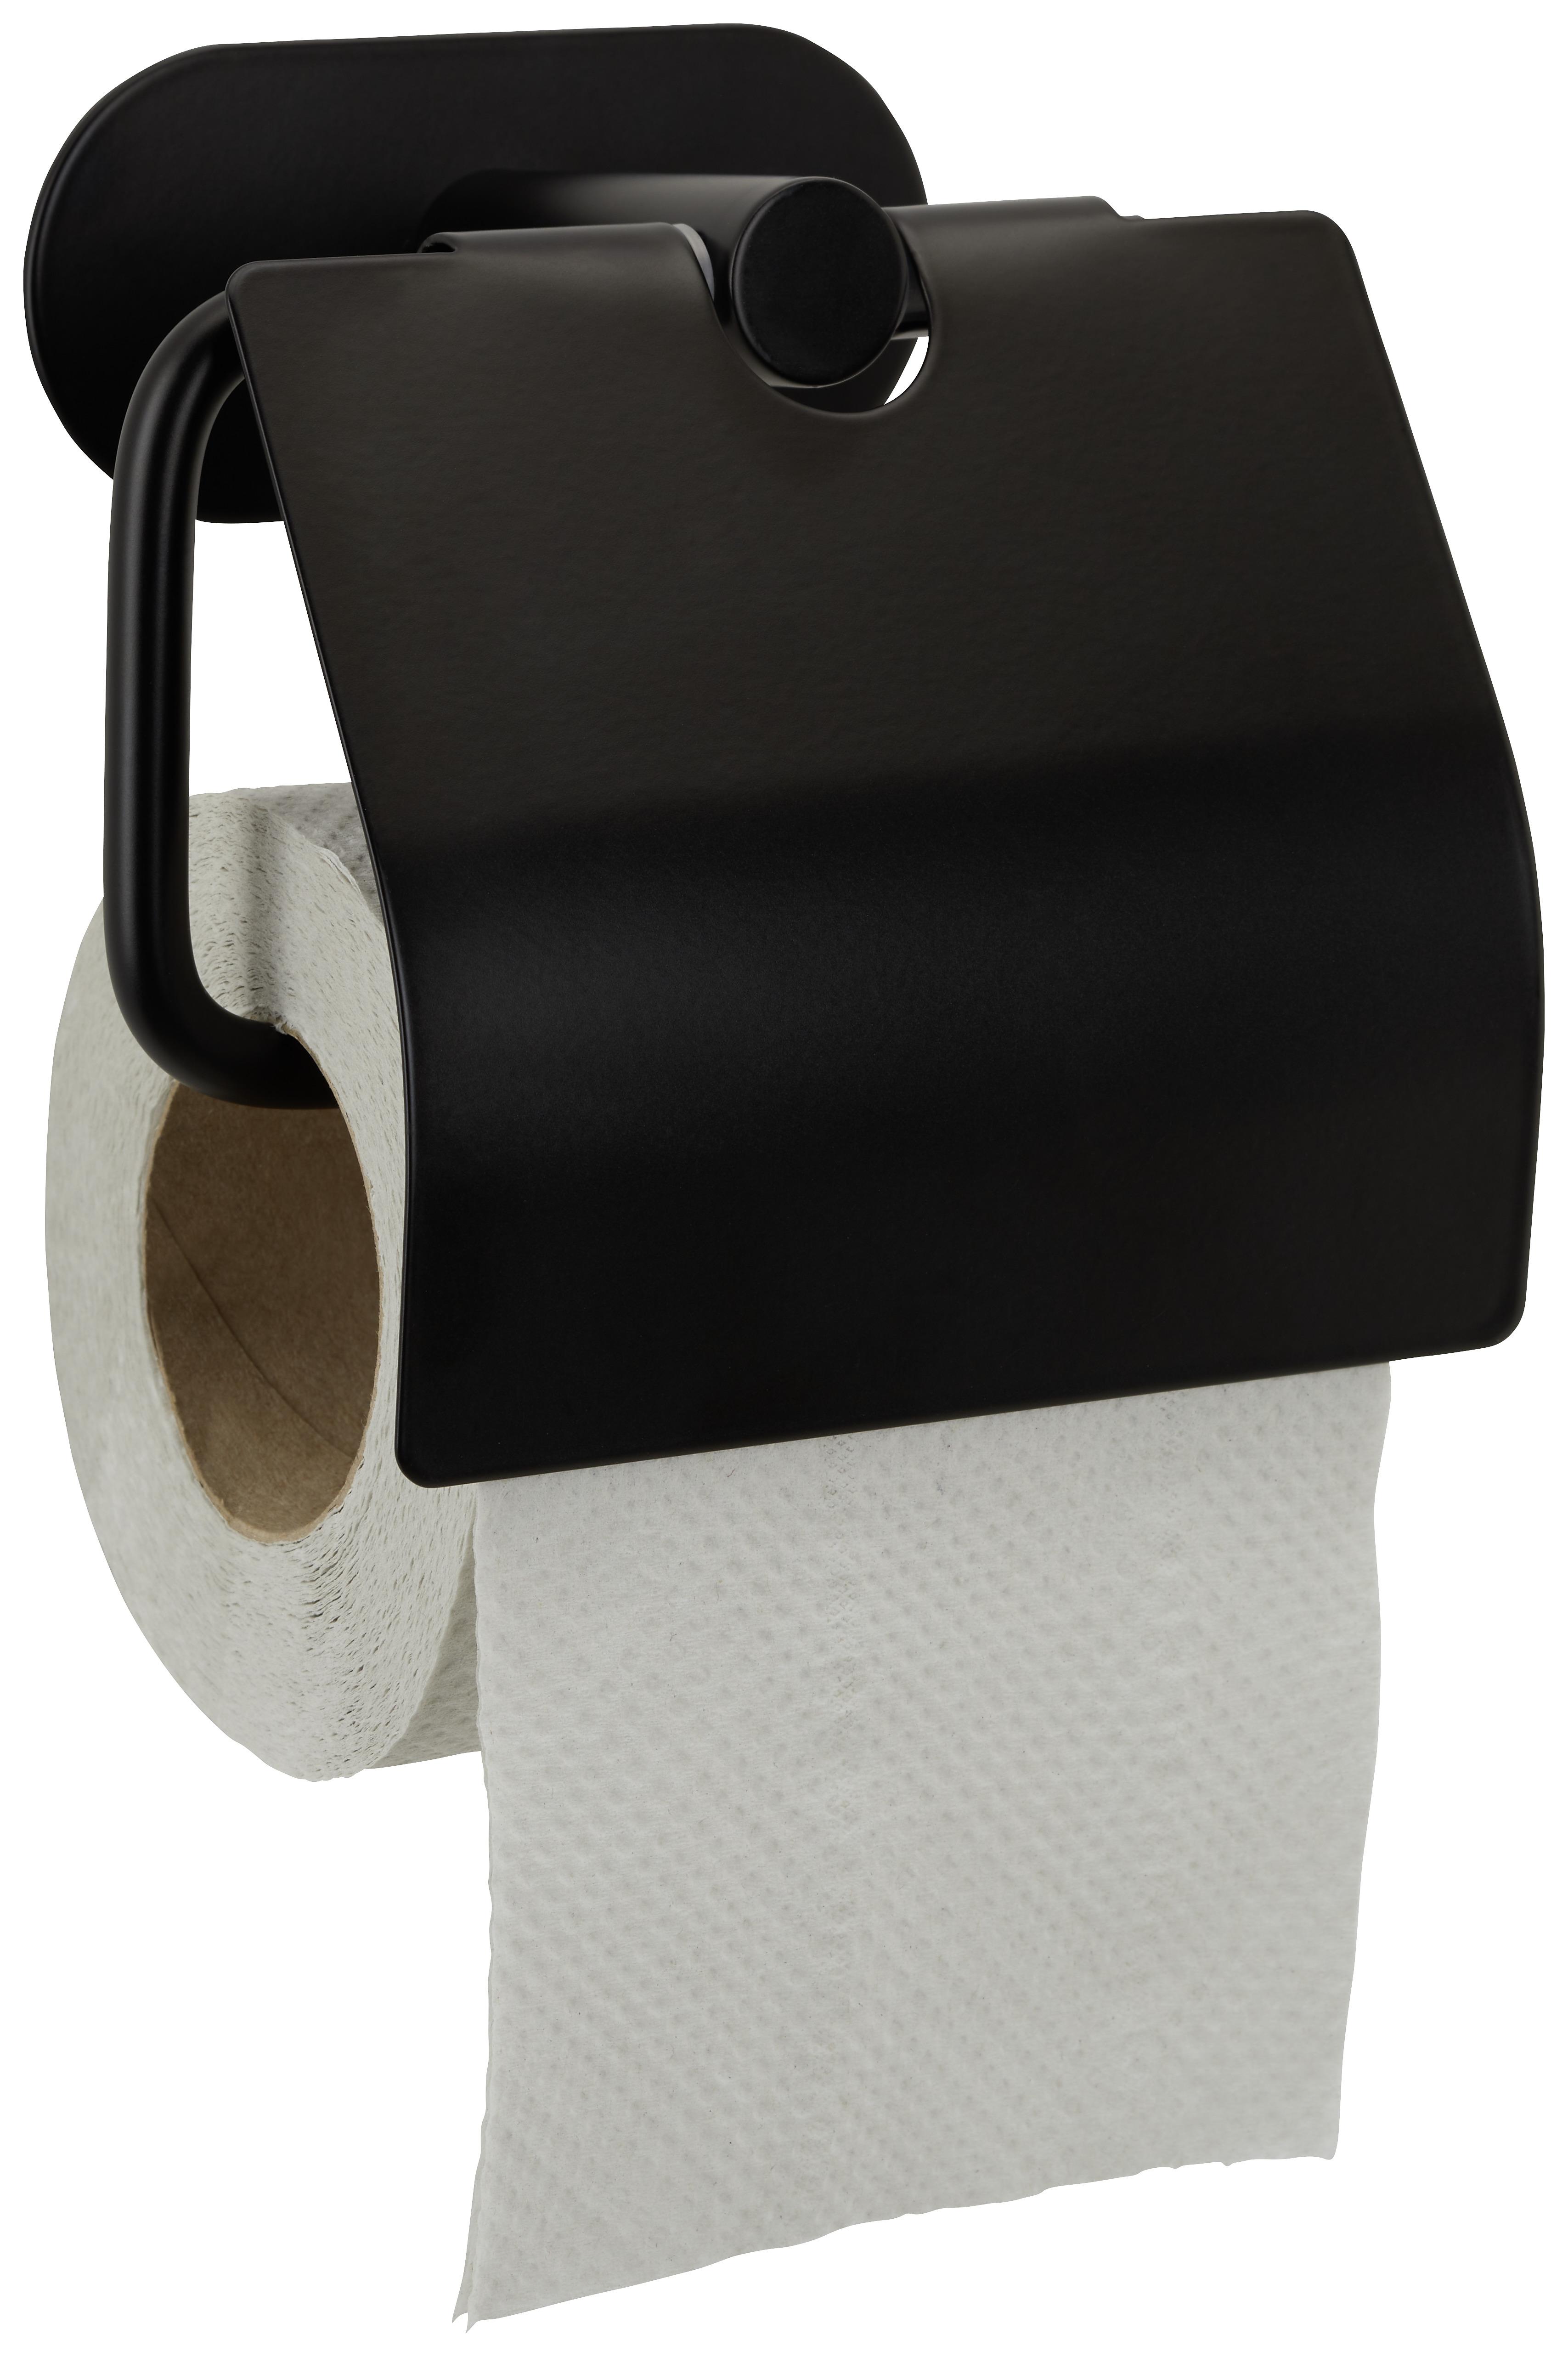 Toilettenpapierhalter aus Metall in Schwarz - Schwarz, Modern, Metall (14/12,5/7cm) - Modern Living